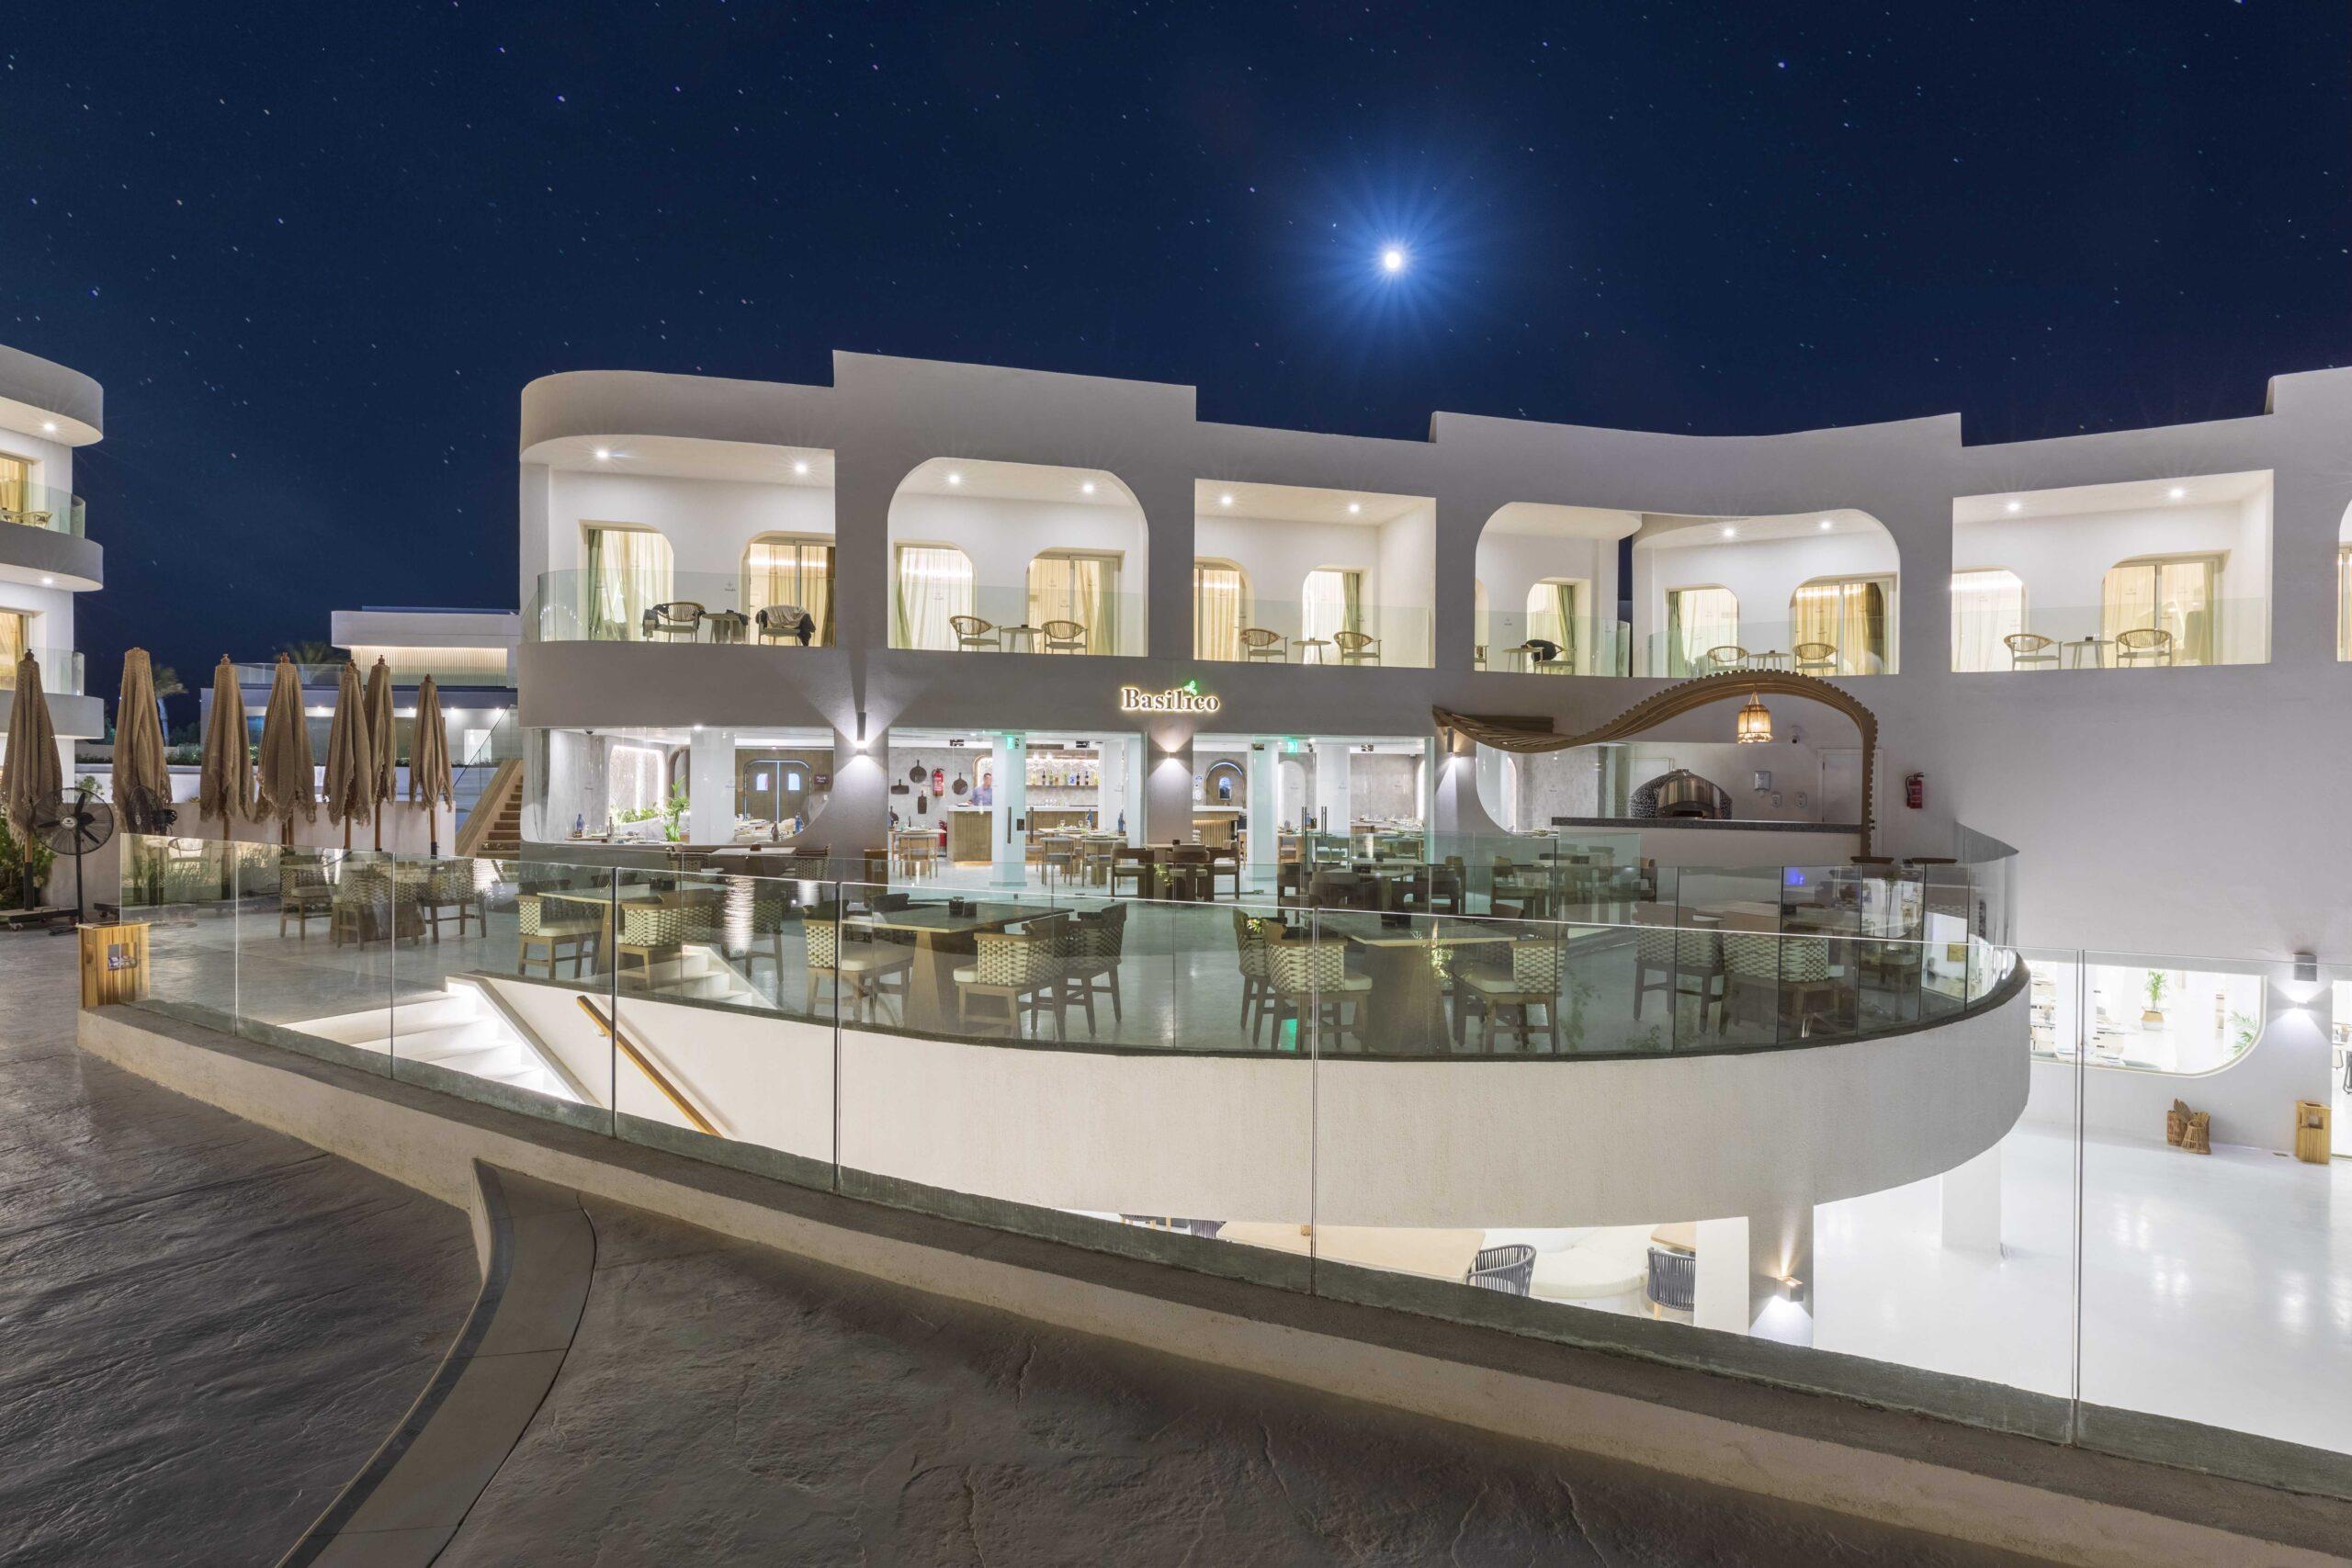 Meraki Resort Sharm El Sheikh 5*